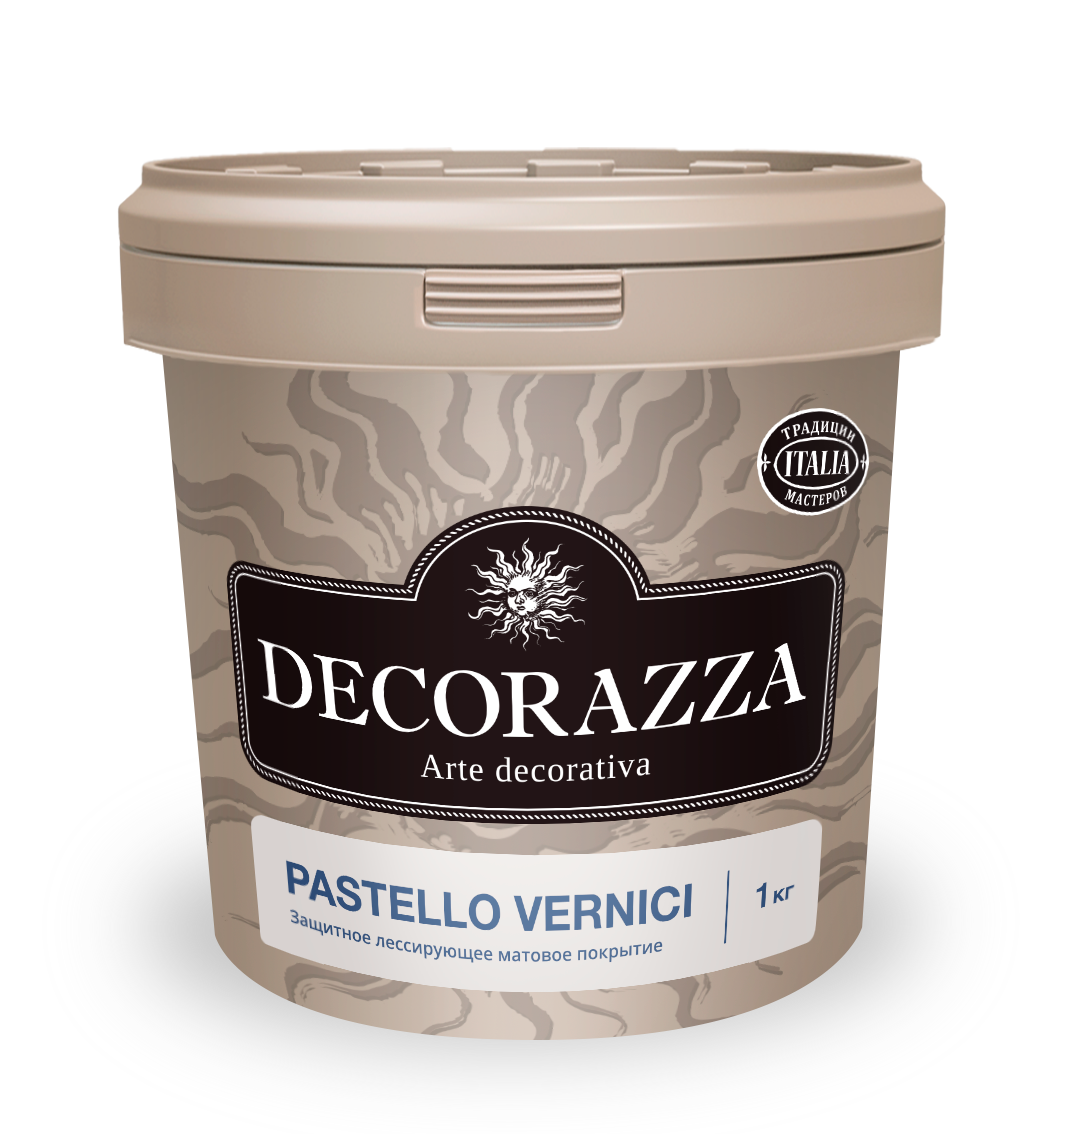 Декоративный финишный лак Decorazza Pastello Vernici PV 001, 1 кг декоративный финишный лак decorazza perla vernici pl001 argento 1 л